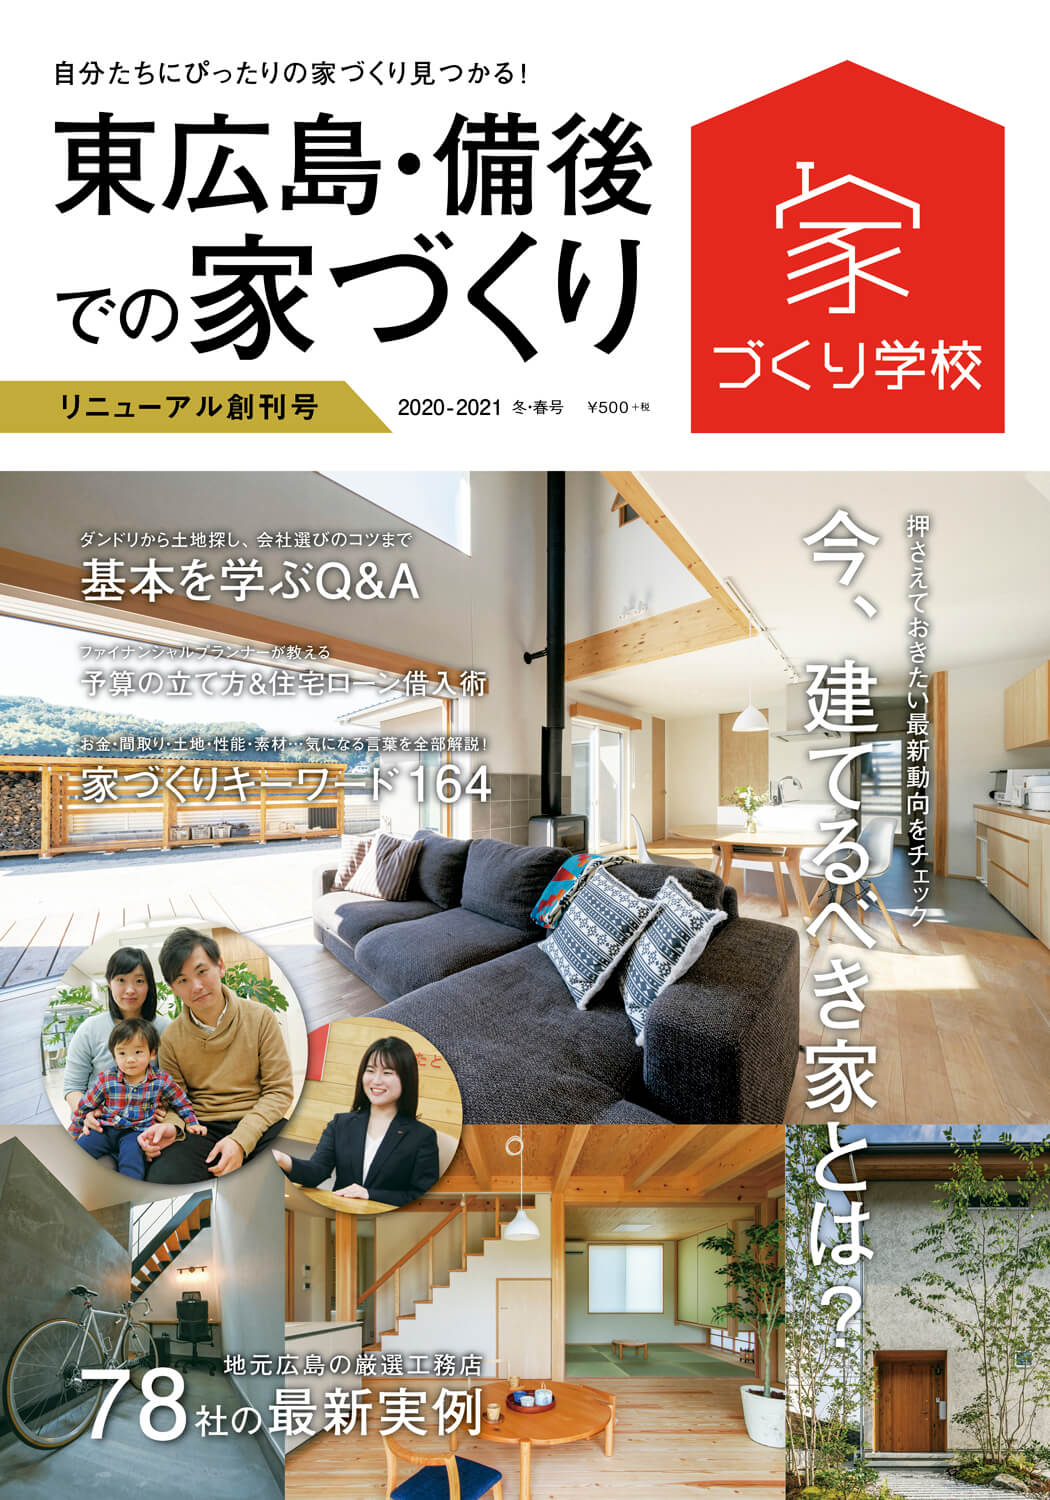 『東広島・備後での家づくり』 リニューアル創刊号が本日発売！